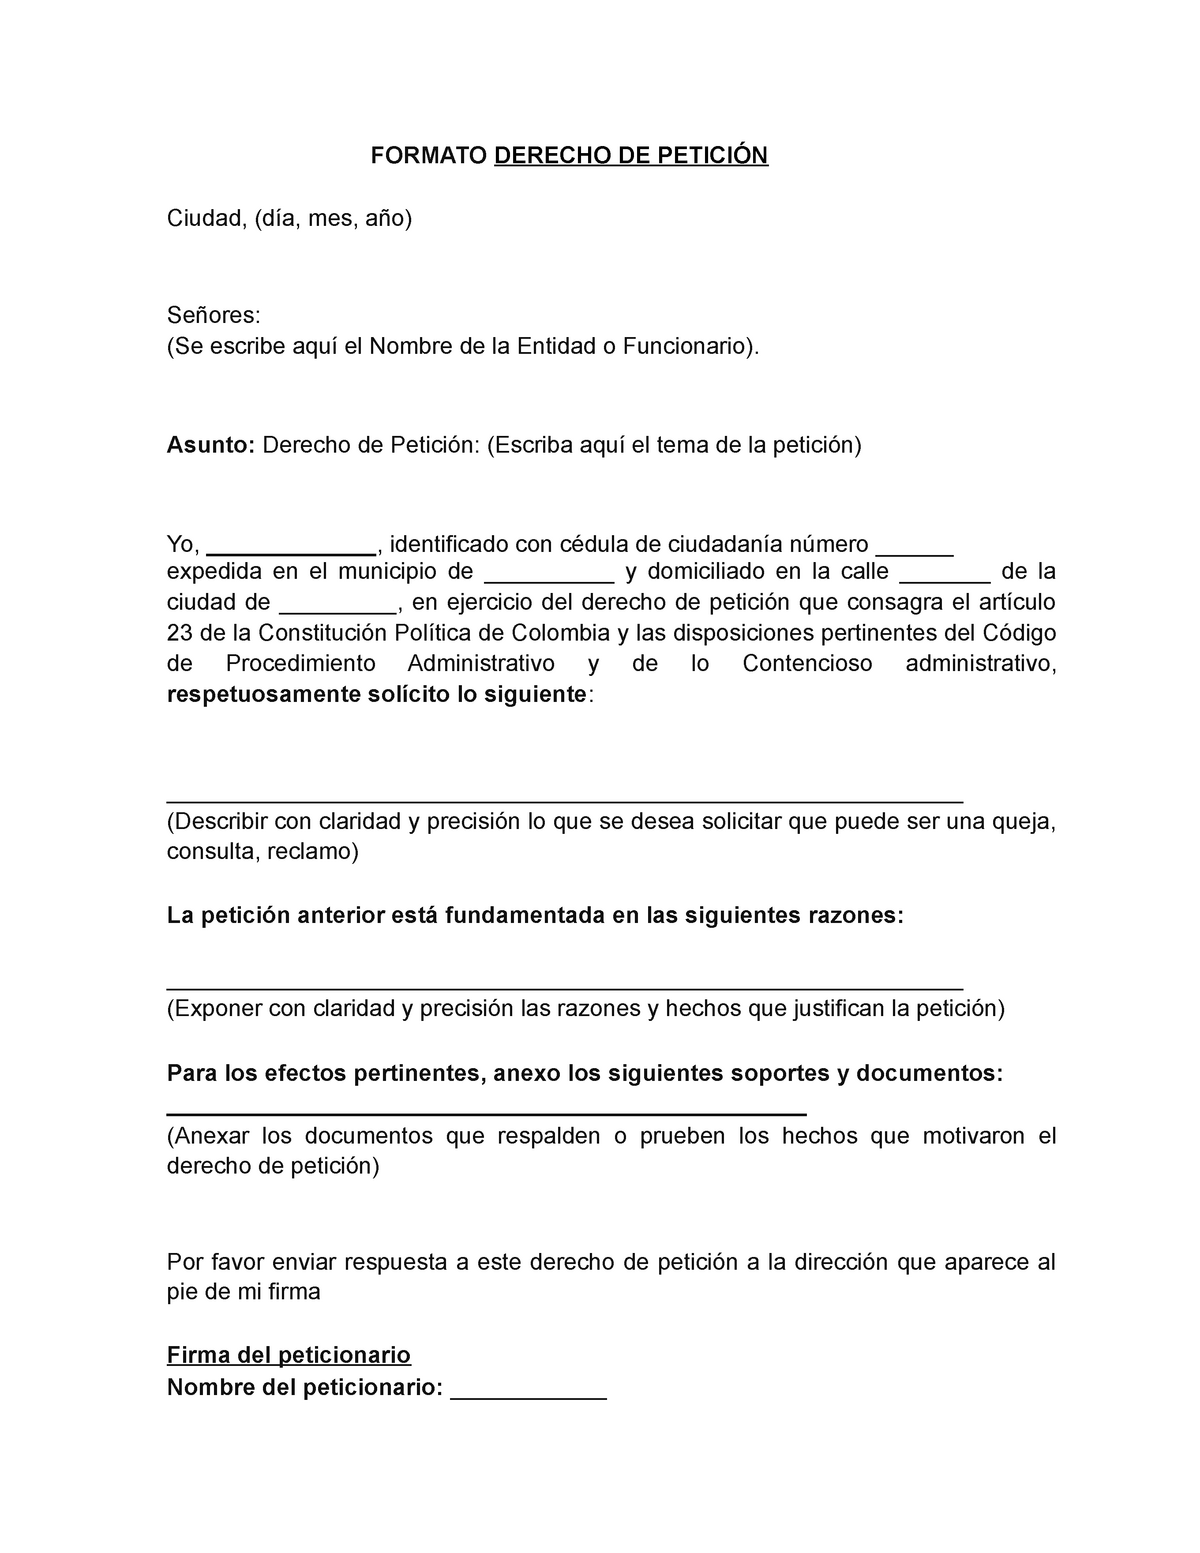 Modelo o formato derecho de peticion Impuesto vehicular - FORMATO DERECHO  DE PETICIÓN Ciudad, (día, - Studocu